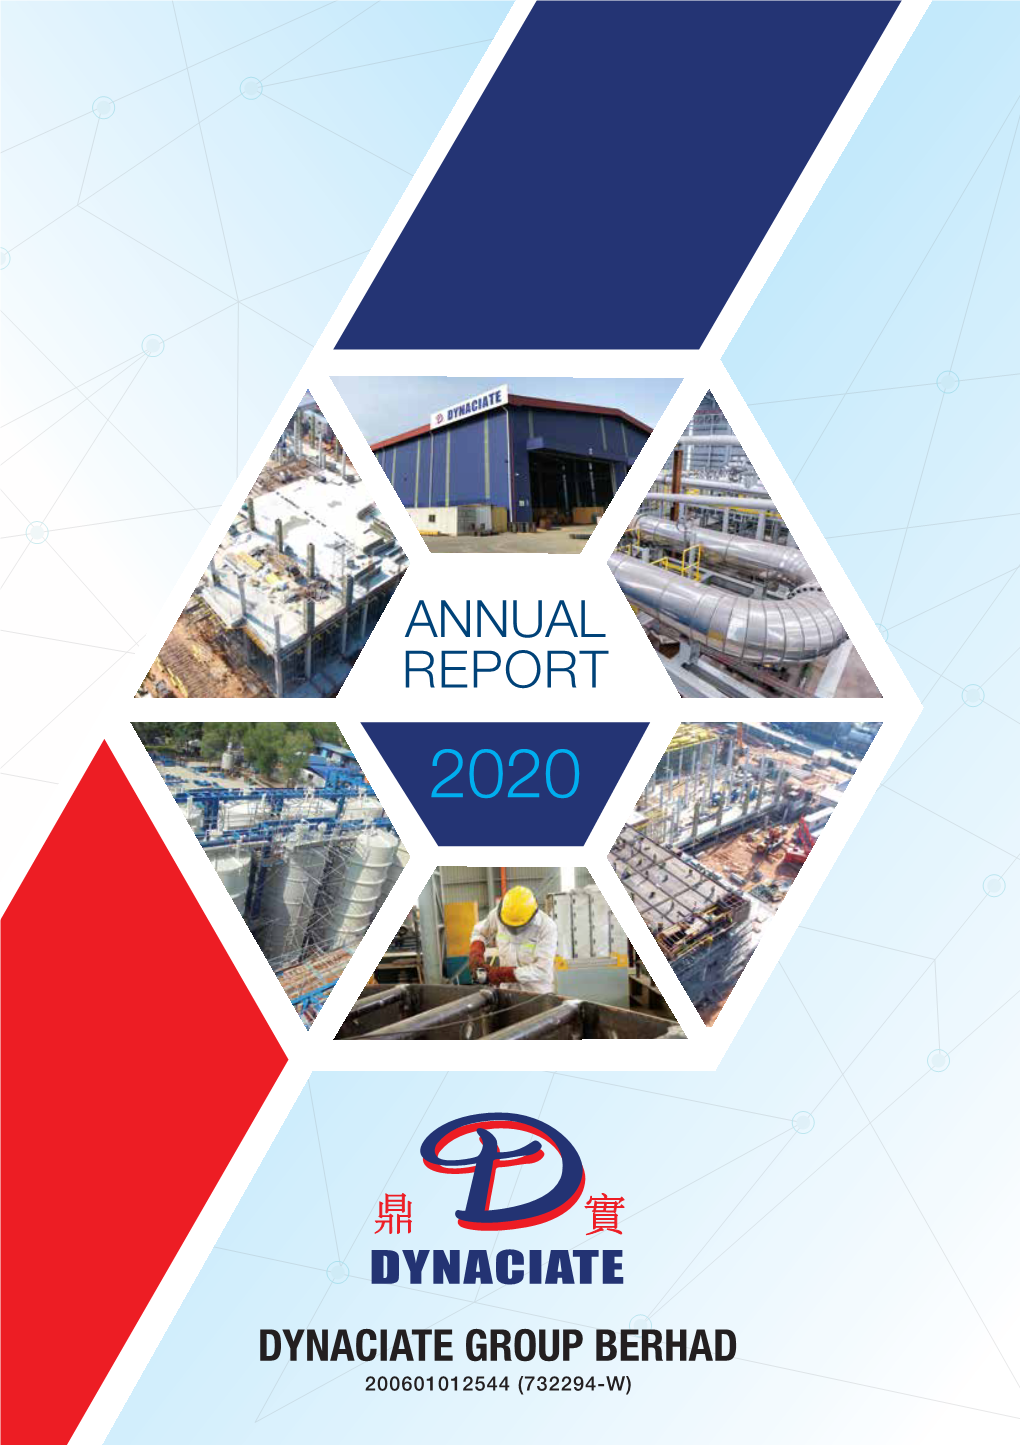 Annual Report 2020 Annual Report 2020